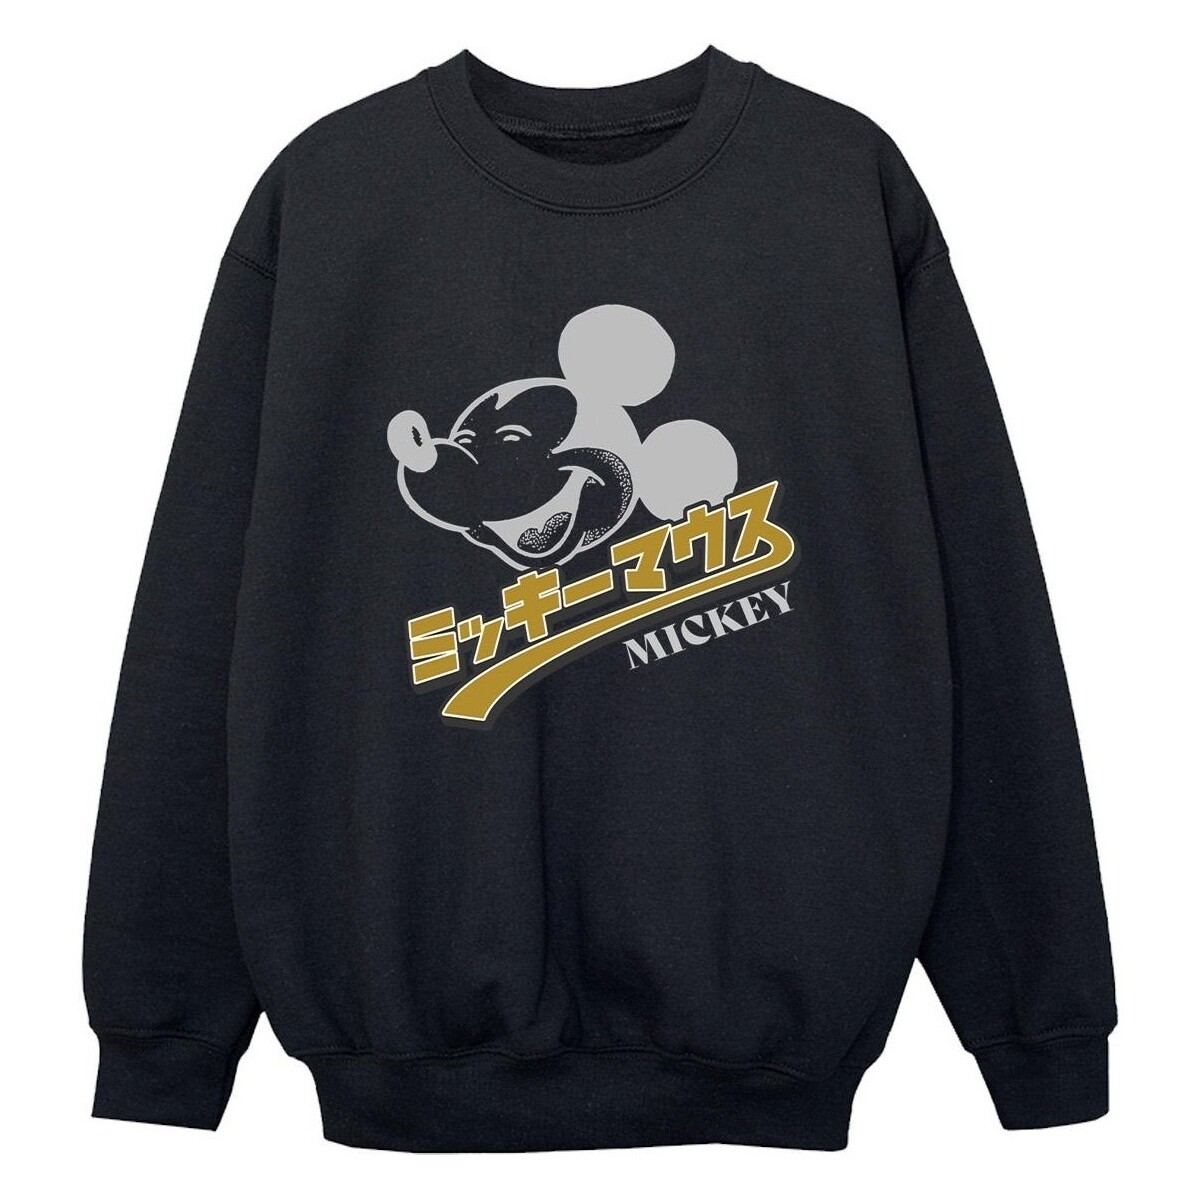 Vêtements Garçon Sweats Disney Mickey Mouse Japanese Noir